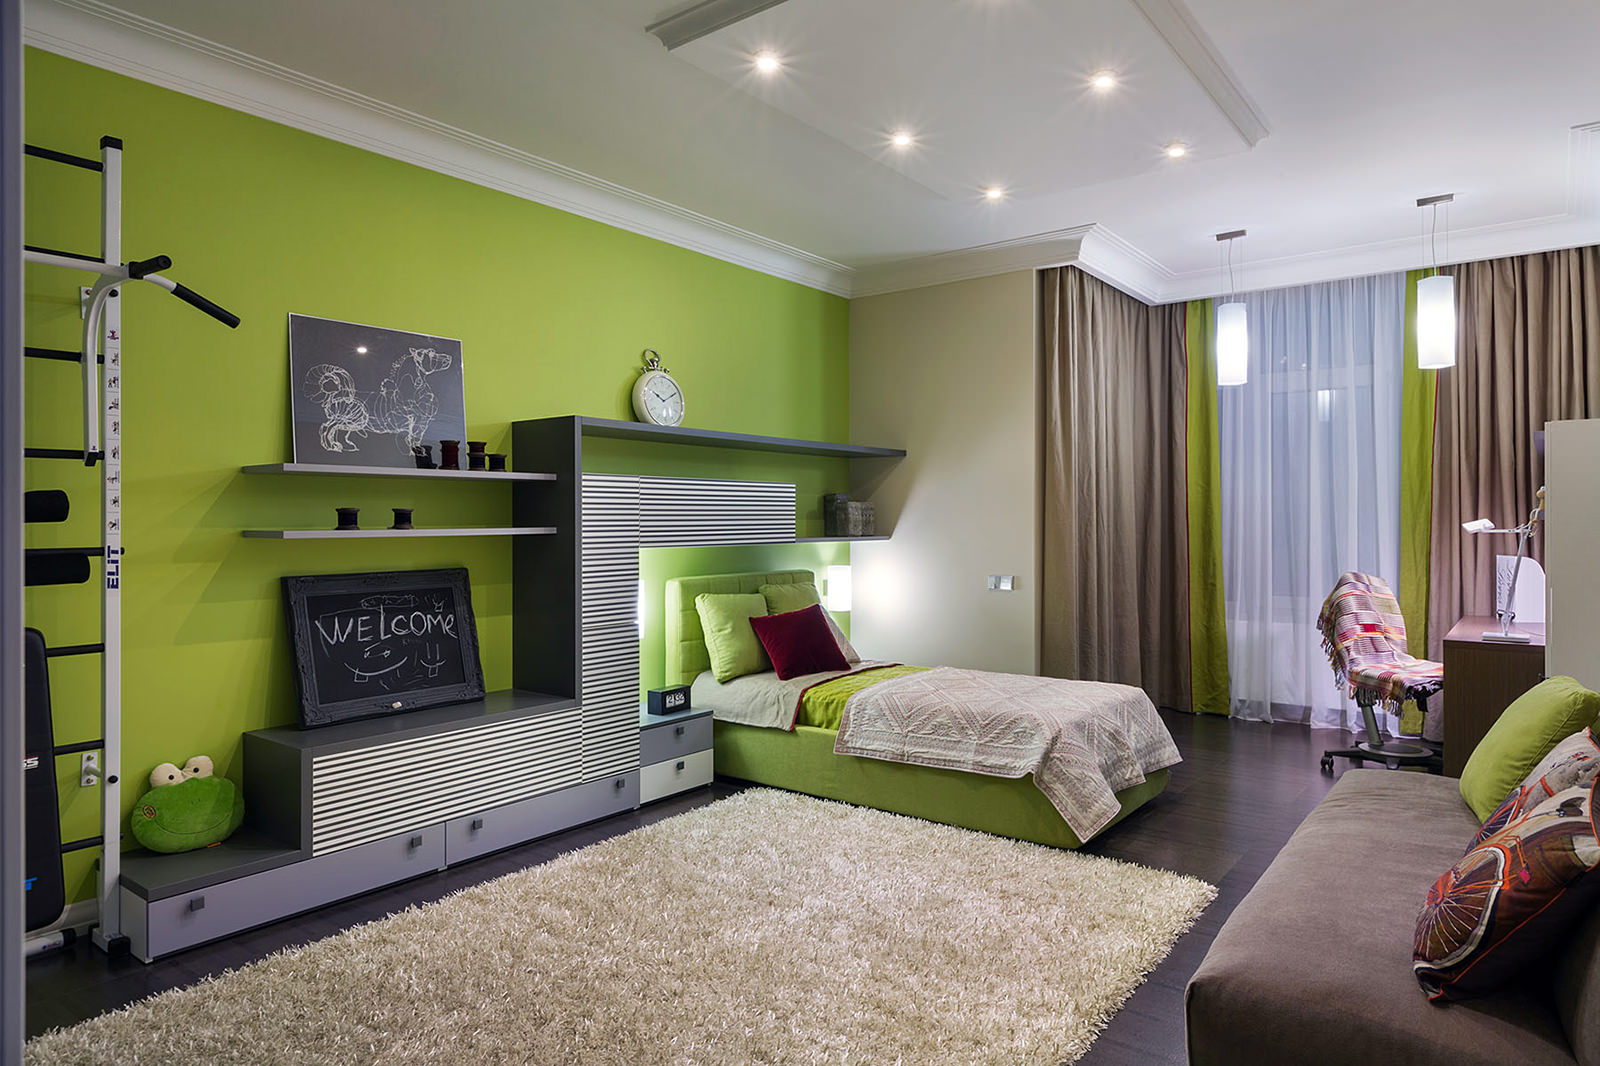 Detská izba v zelenej farbe